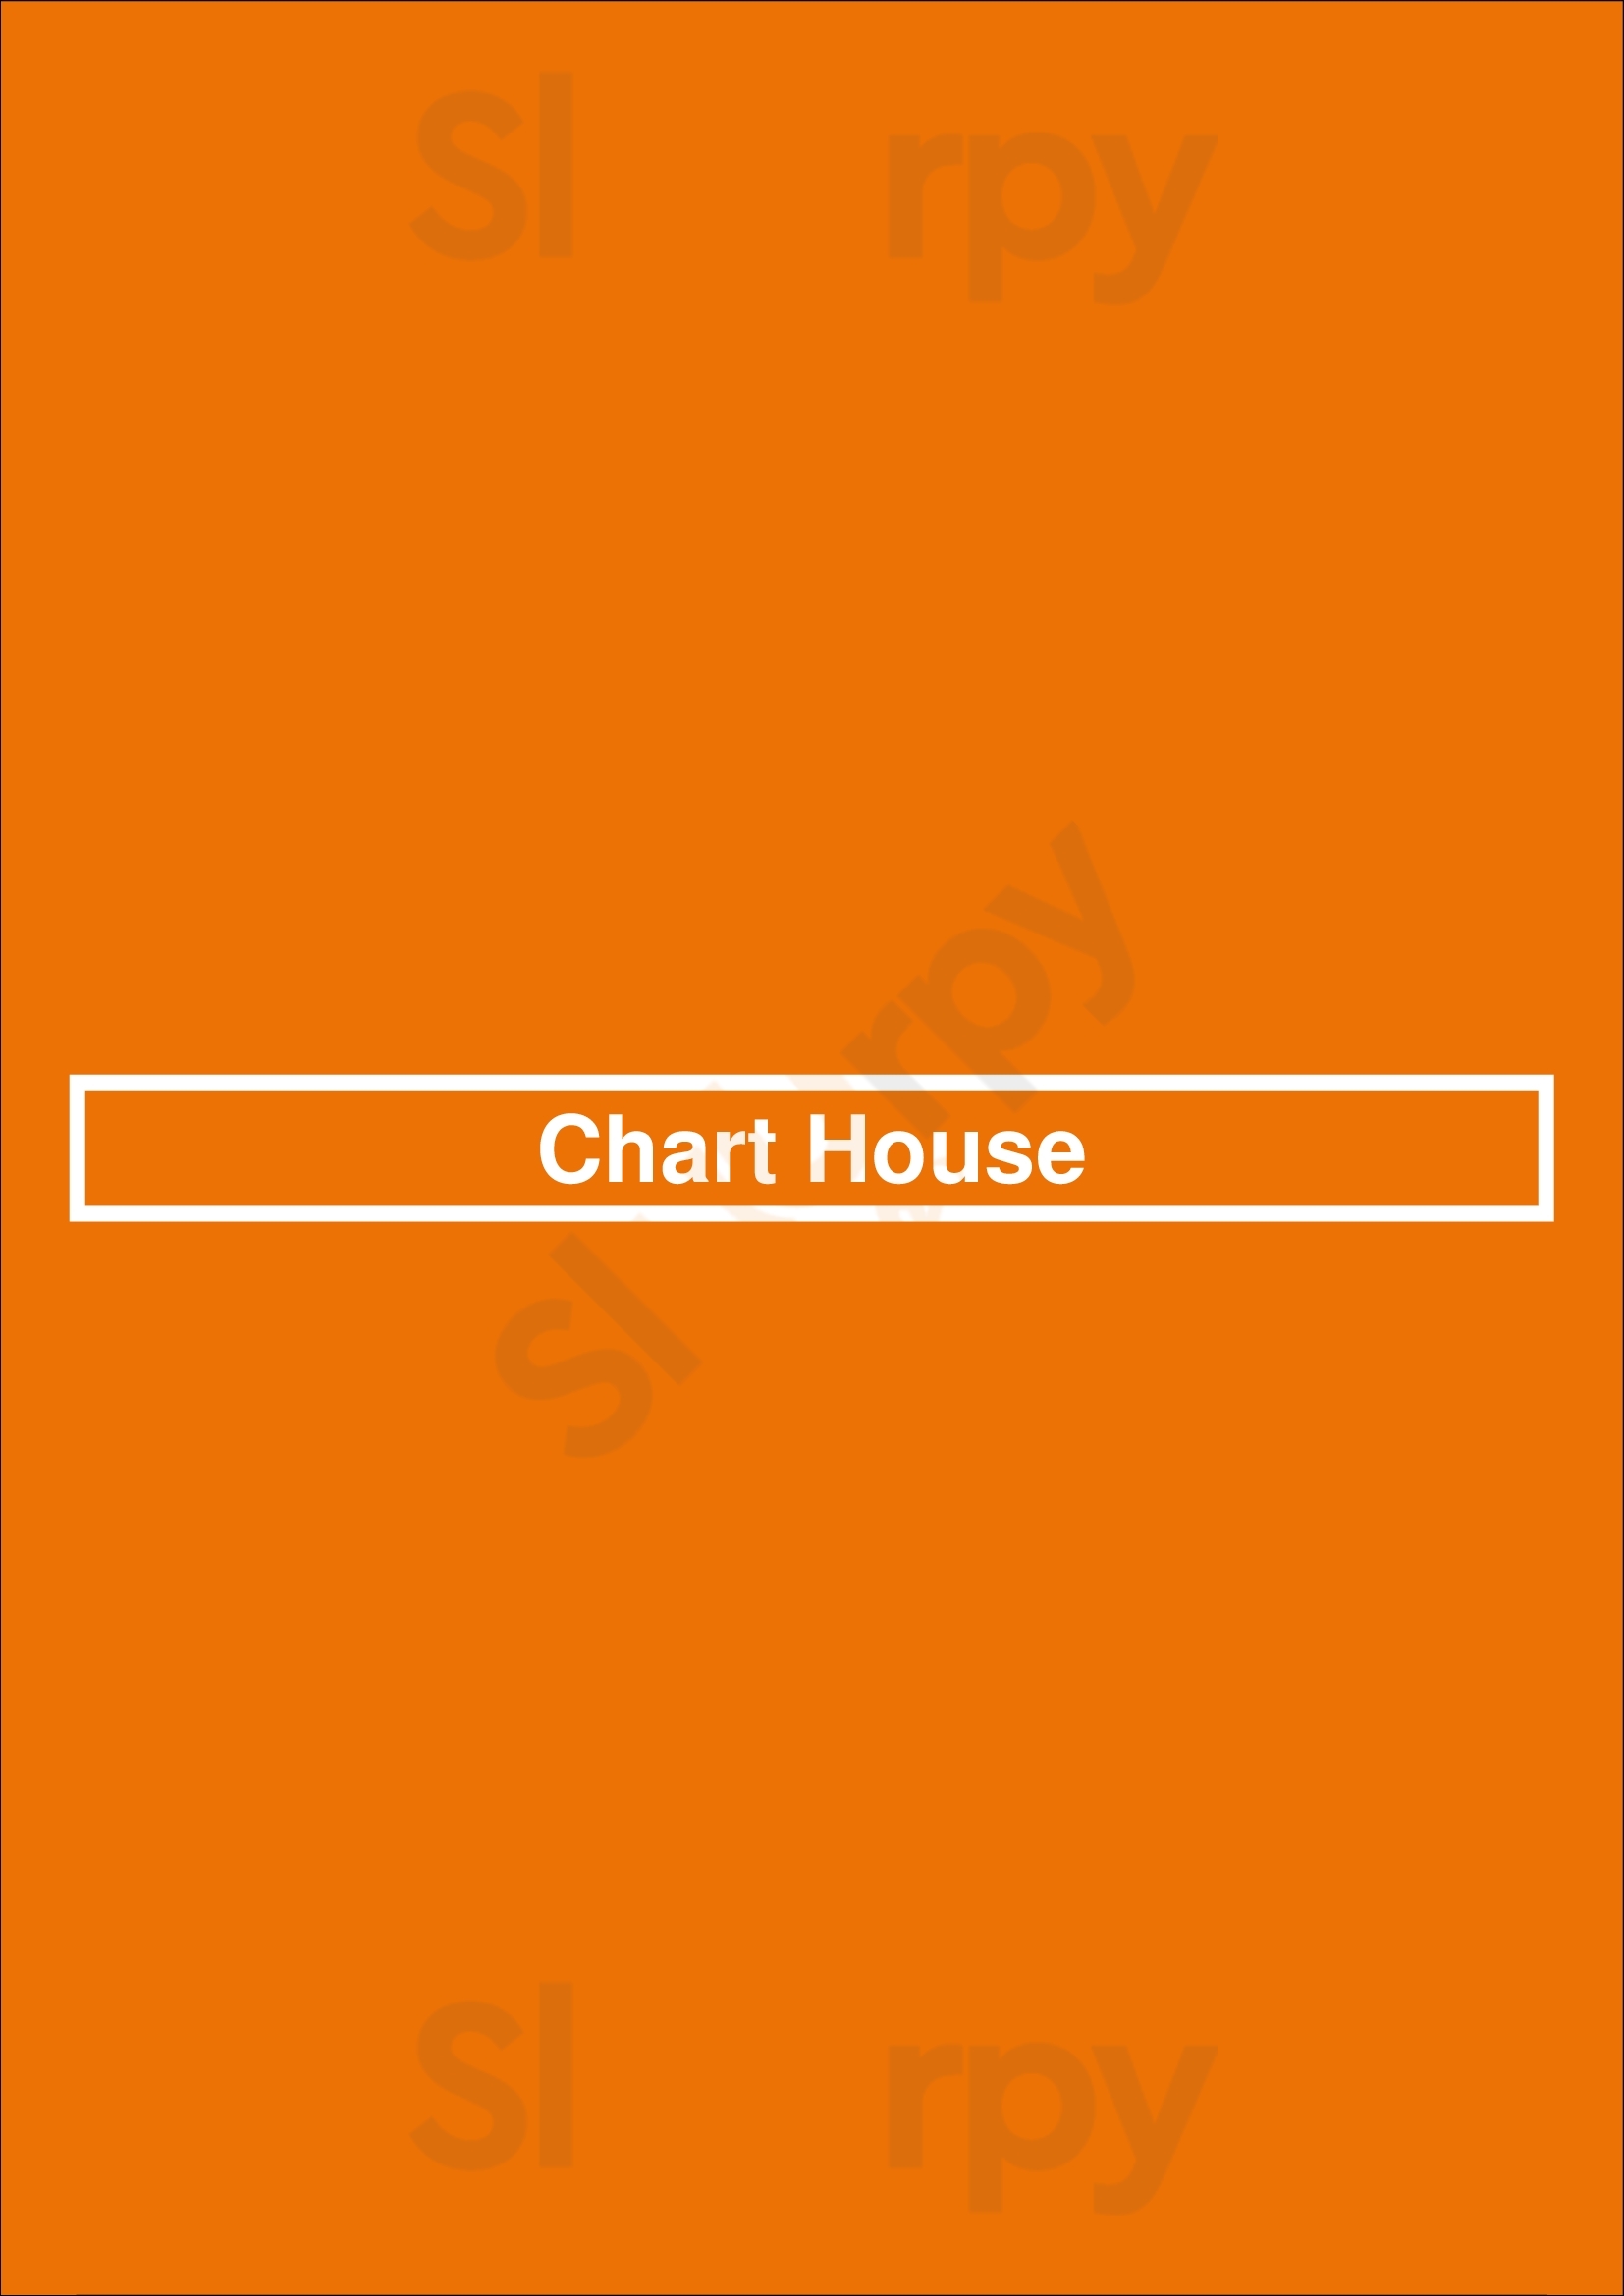 Chart House Portland Menu - 1